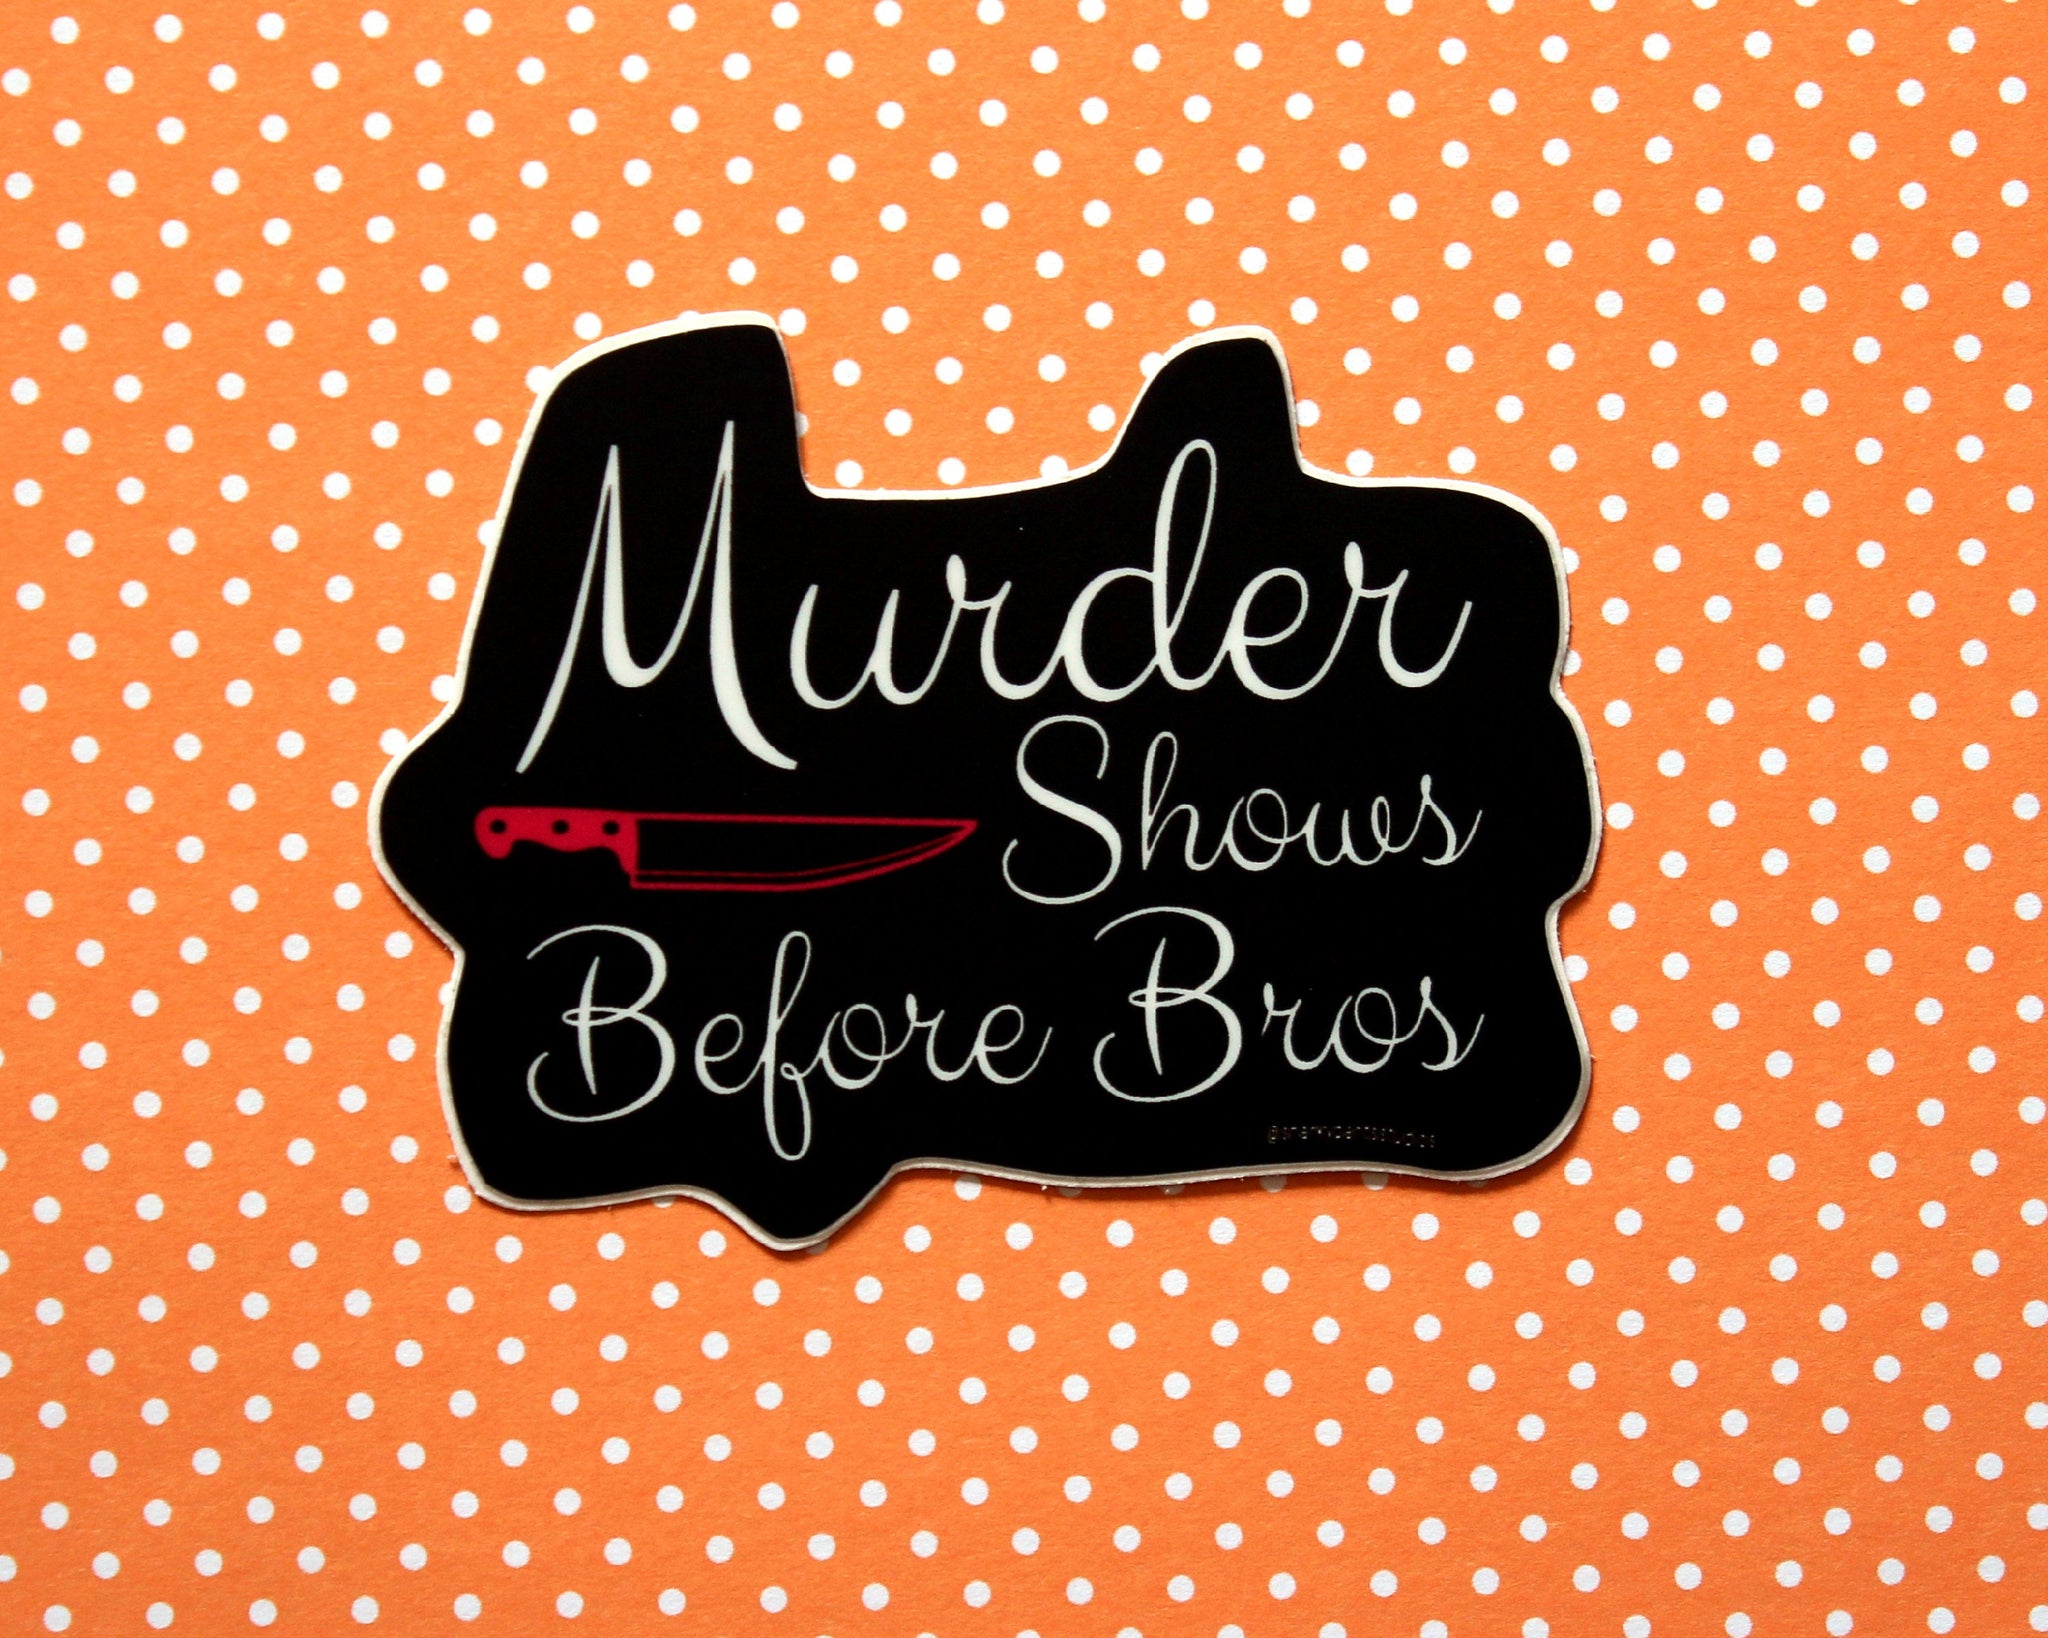 Murder Shows Before Bros Sticker, My Favorite Murder, True Crime Fans, Gifts, Laptop Sticker